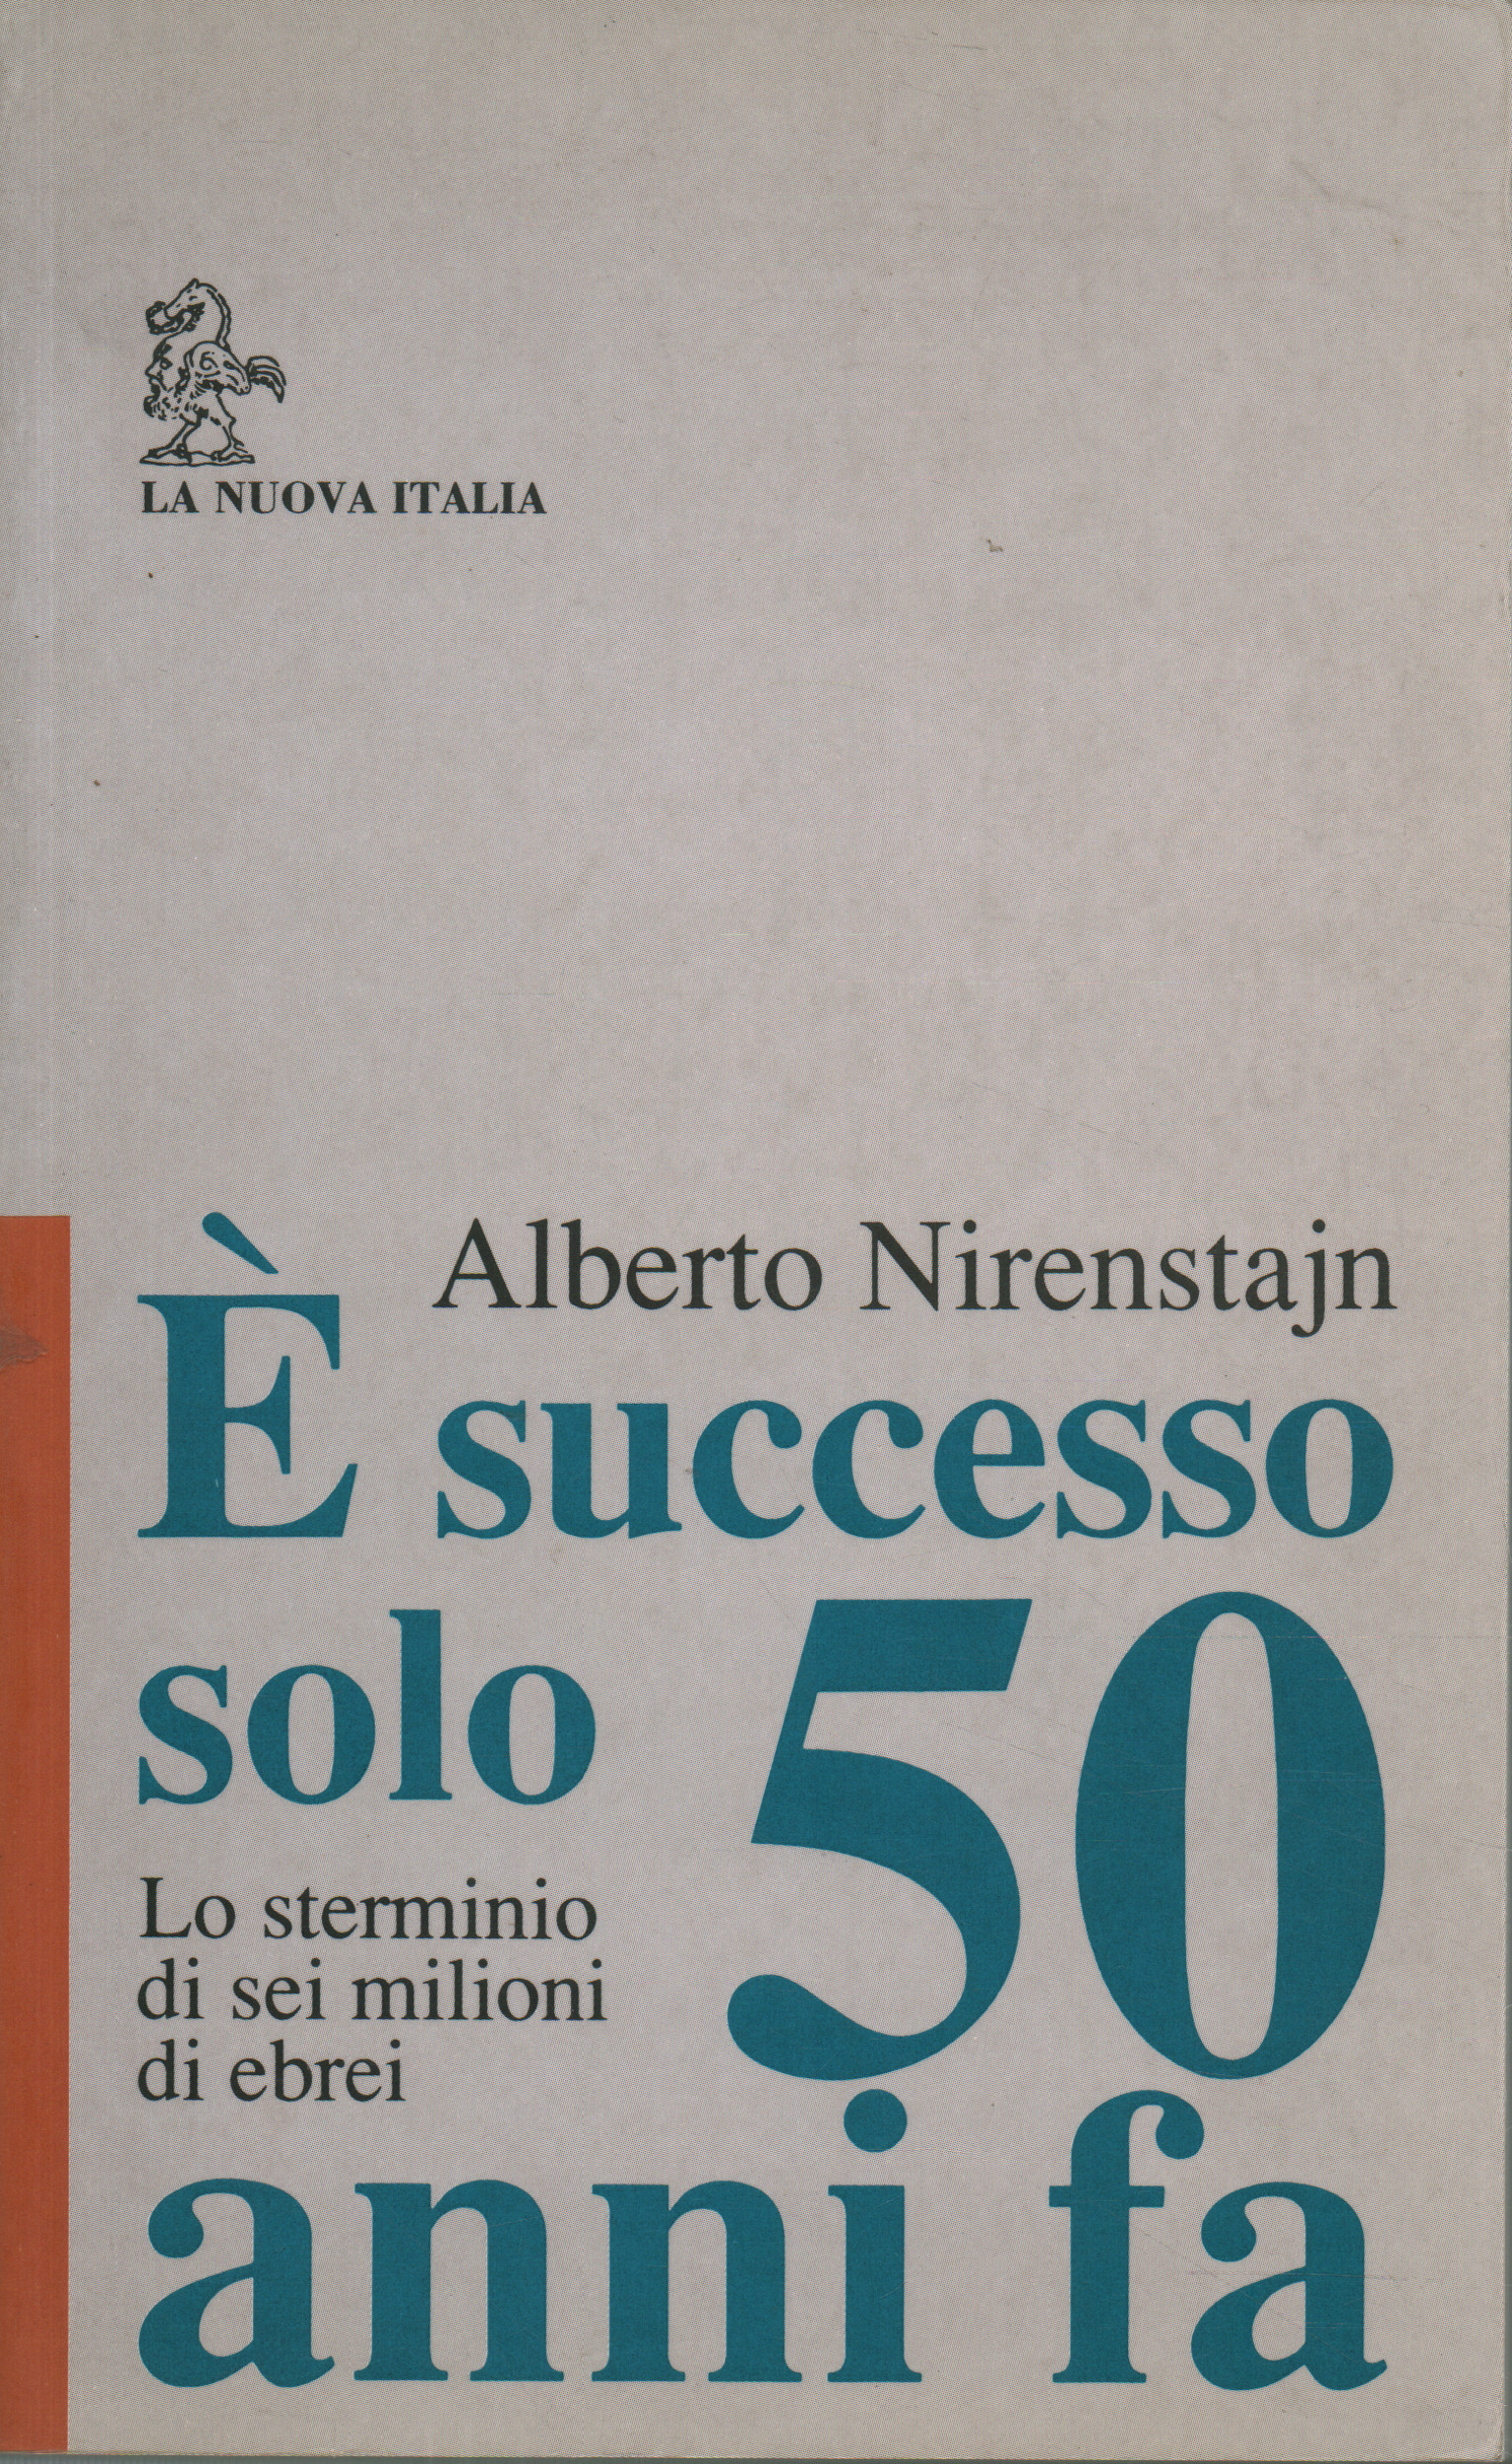 È successo solo 50 anni fa , Alberto Nirenstajn